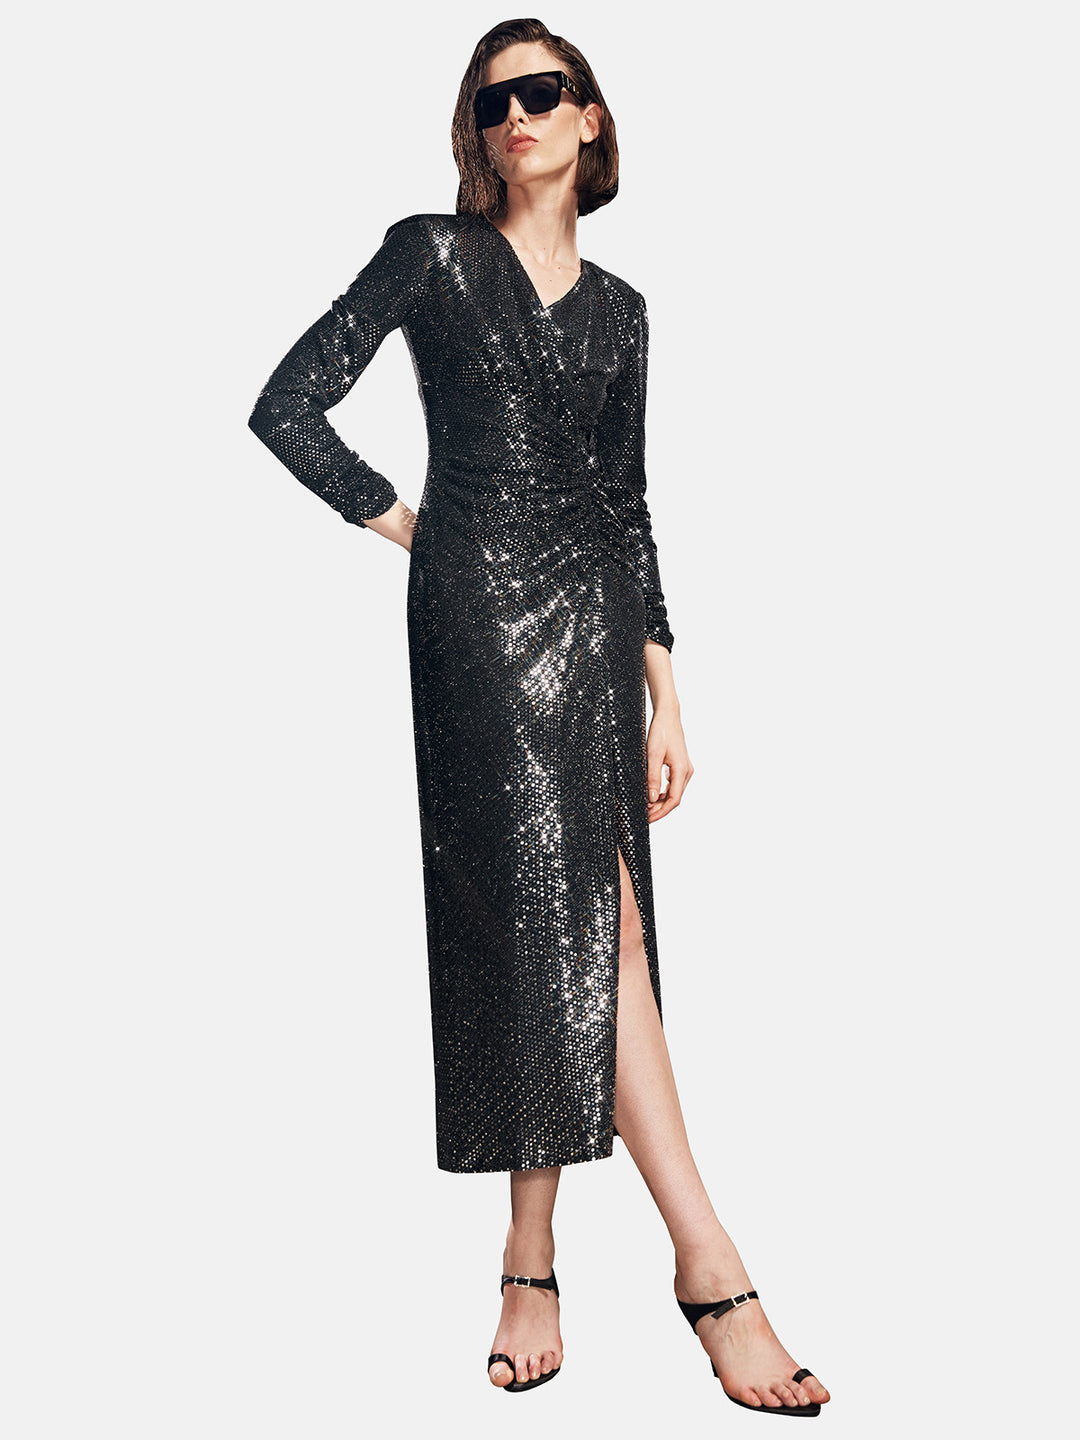 Futuristic Black Glitter Maxi Dress